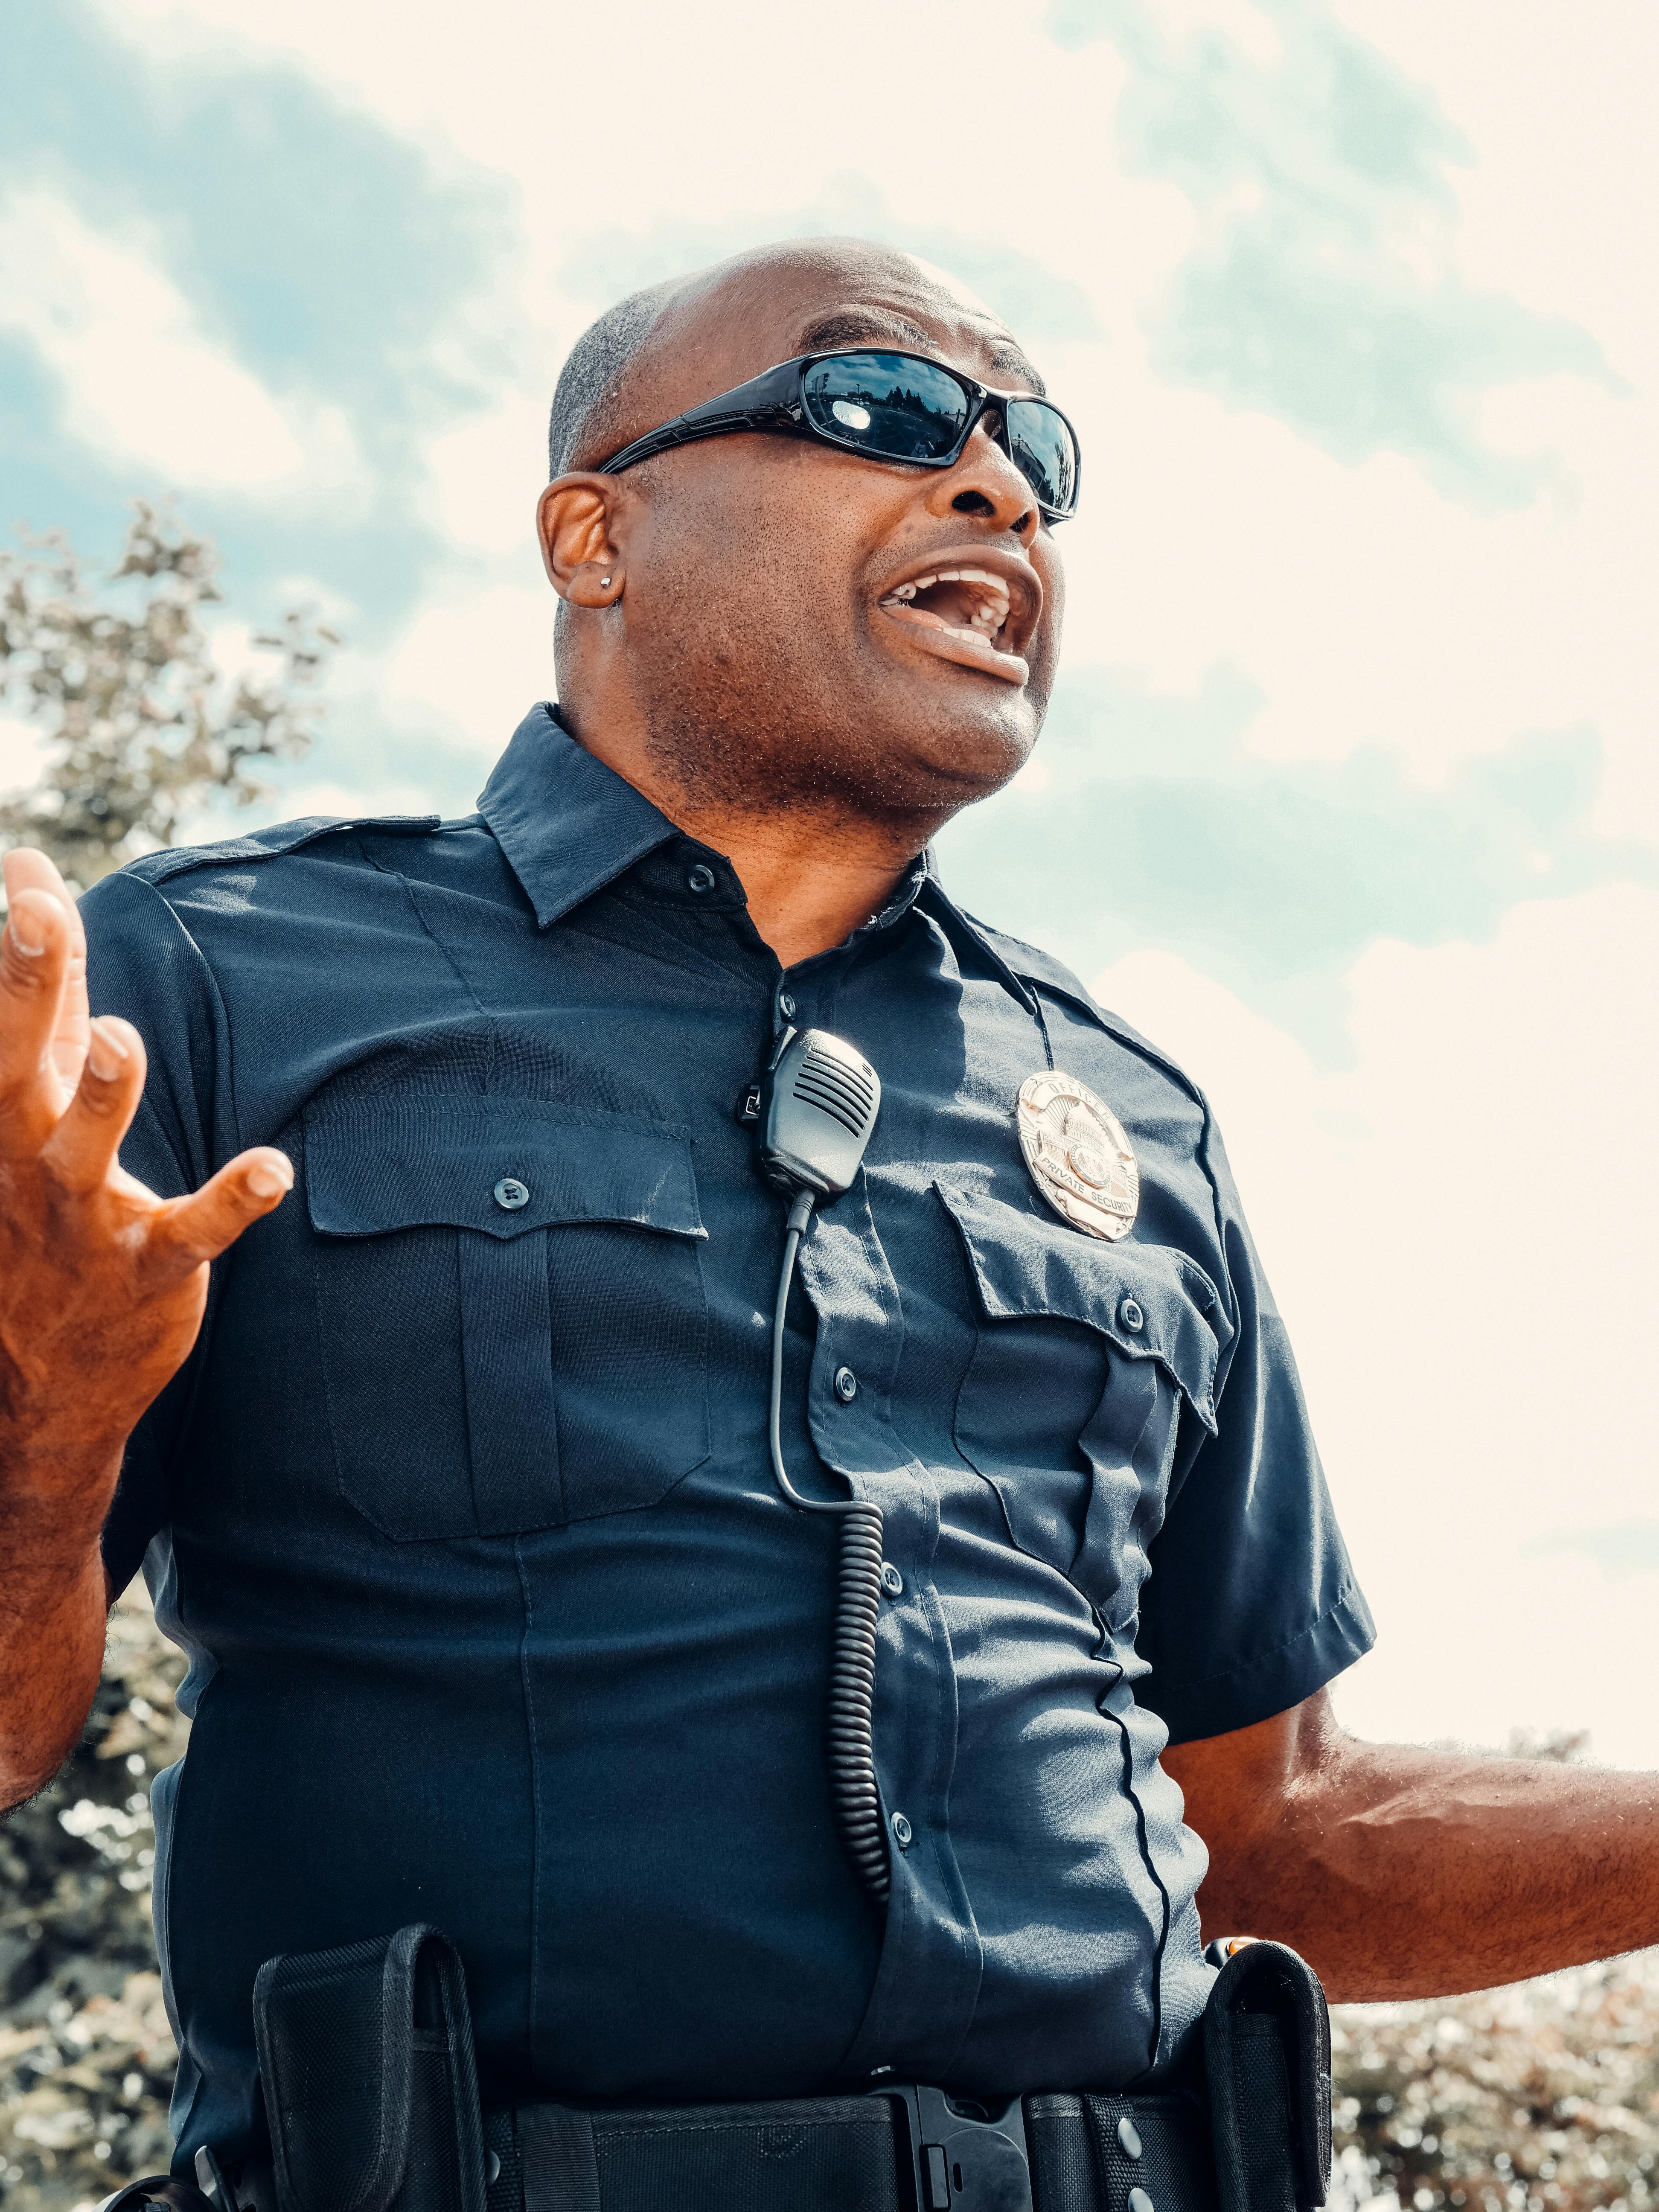 Ein wütender Polizist, der schreit | Quelle: Pexels